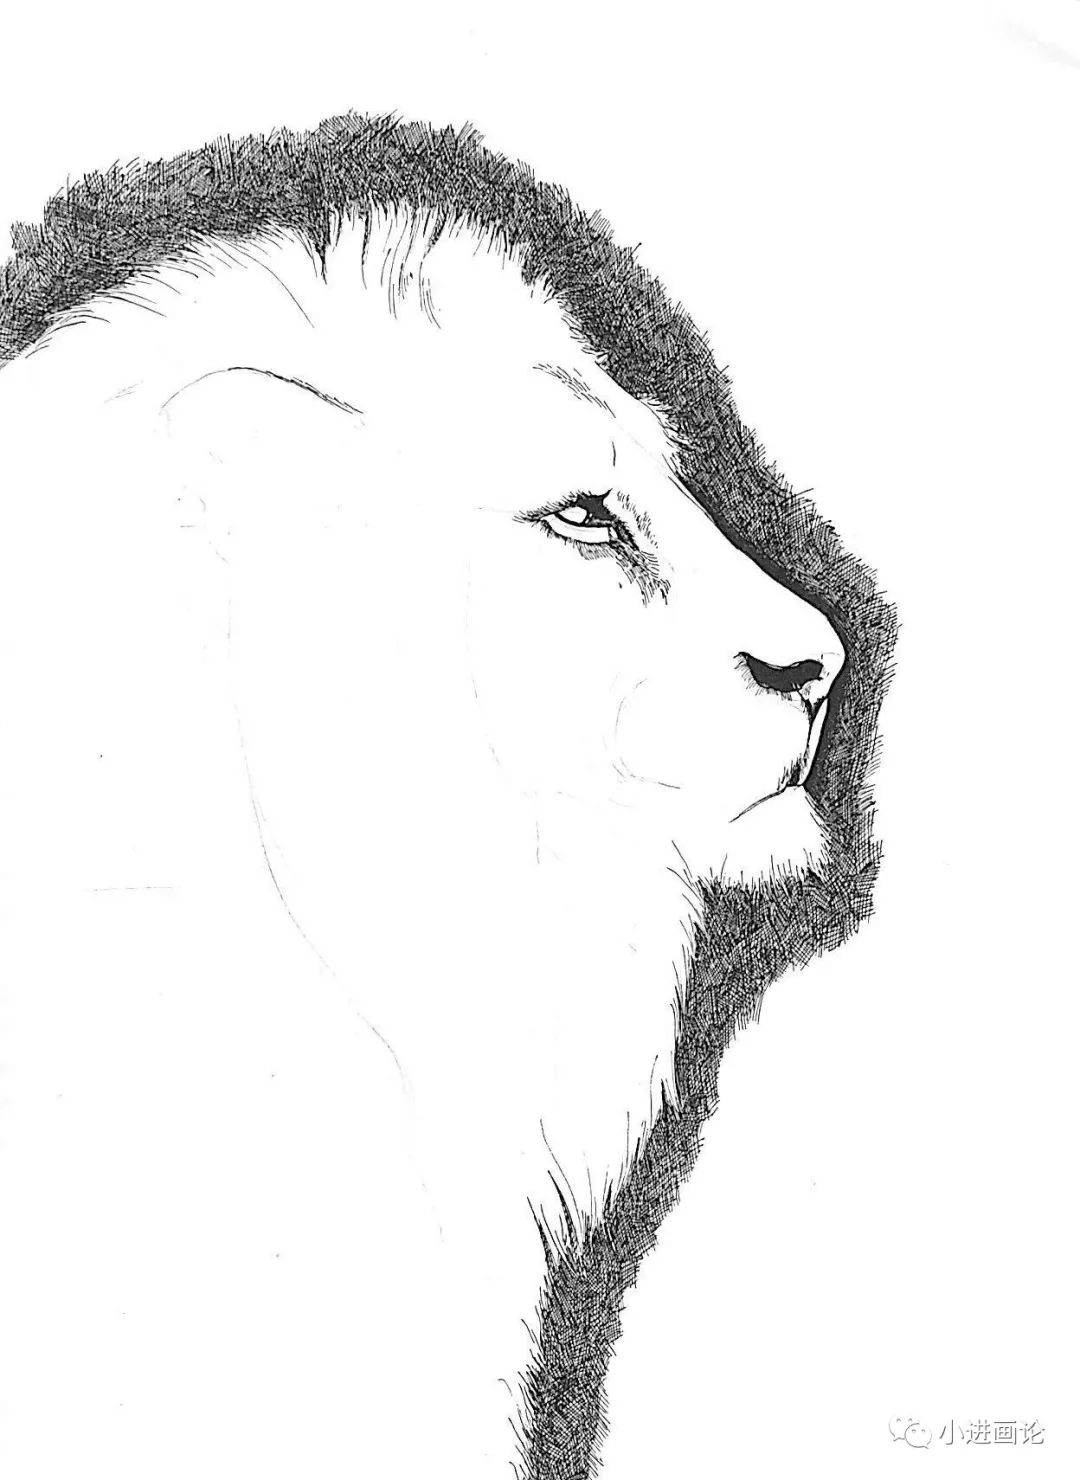 四,画出眼睛,鼻孔,耳廓等就是狮子面部上颜色最重的部位